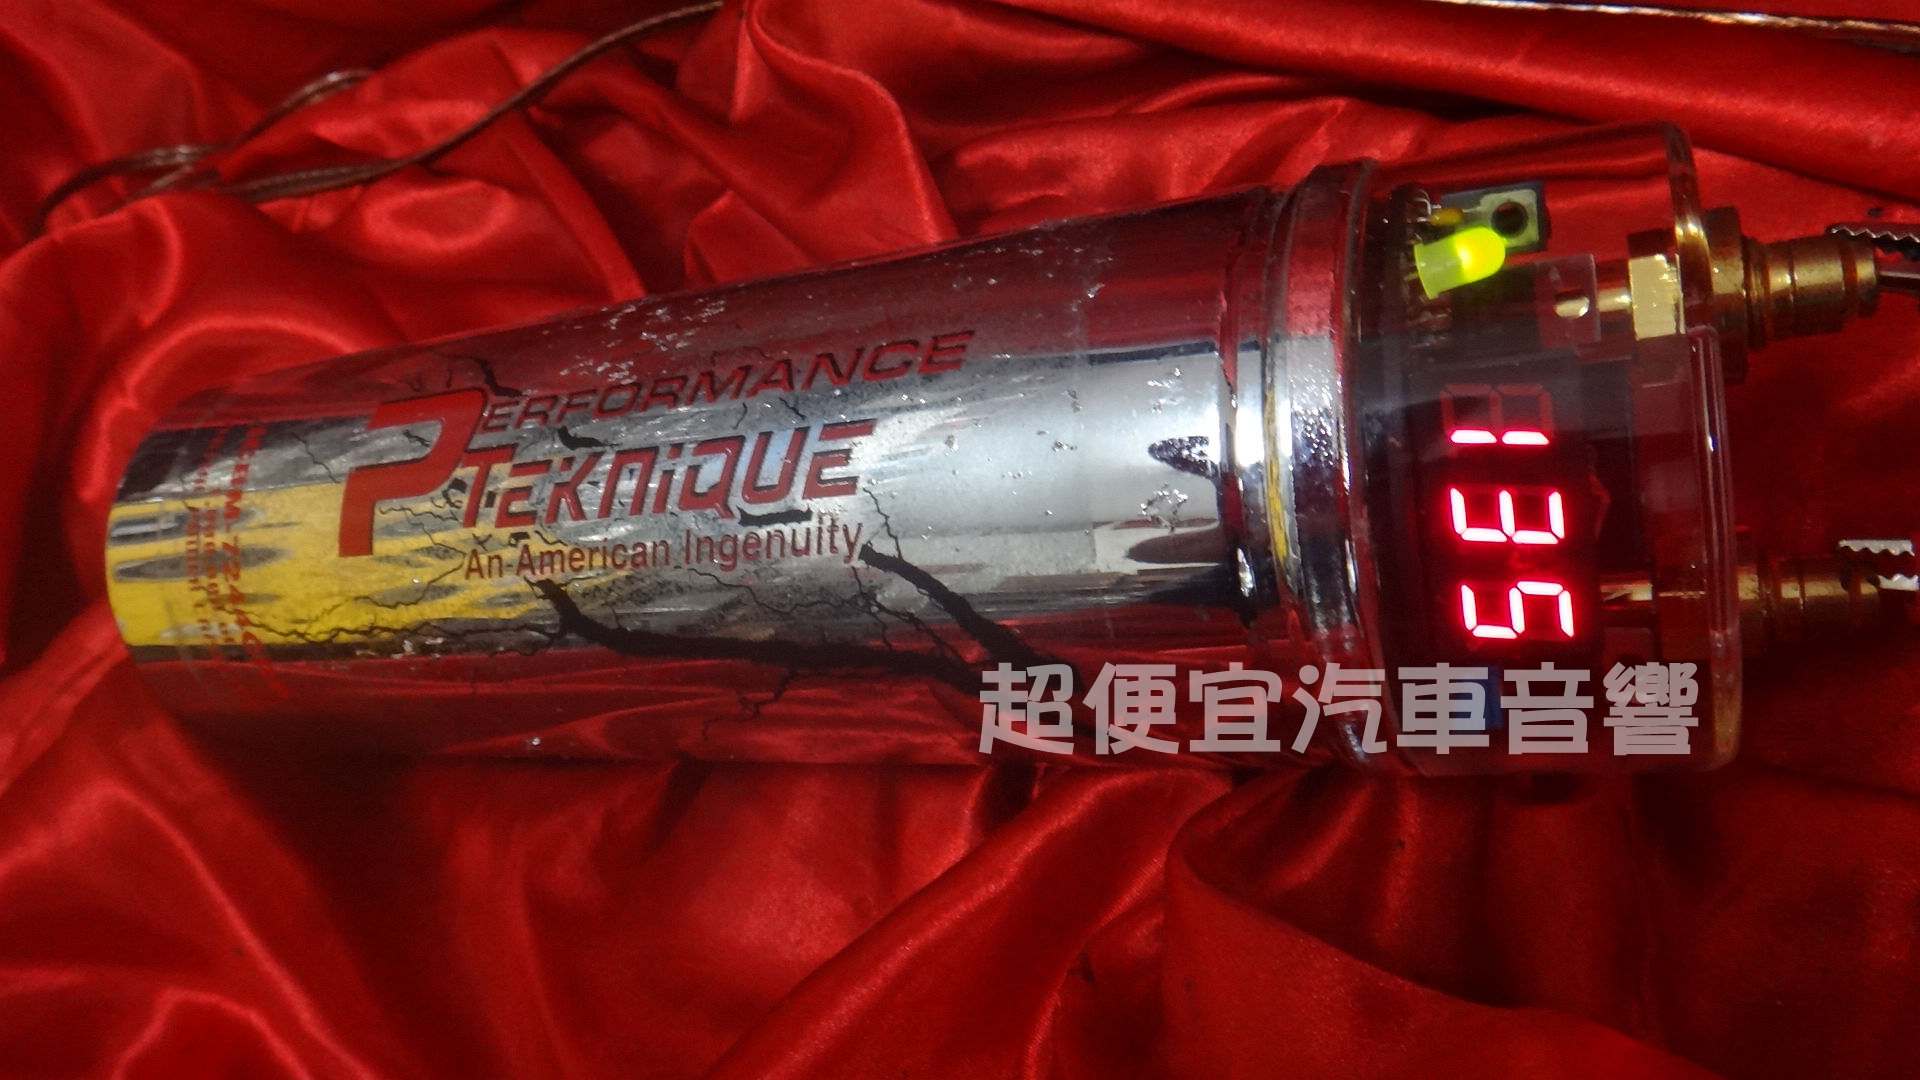 台灣PTEKniQUE 1.5法拉 電壓表